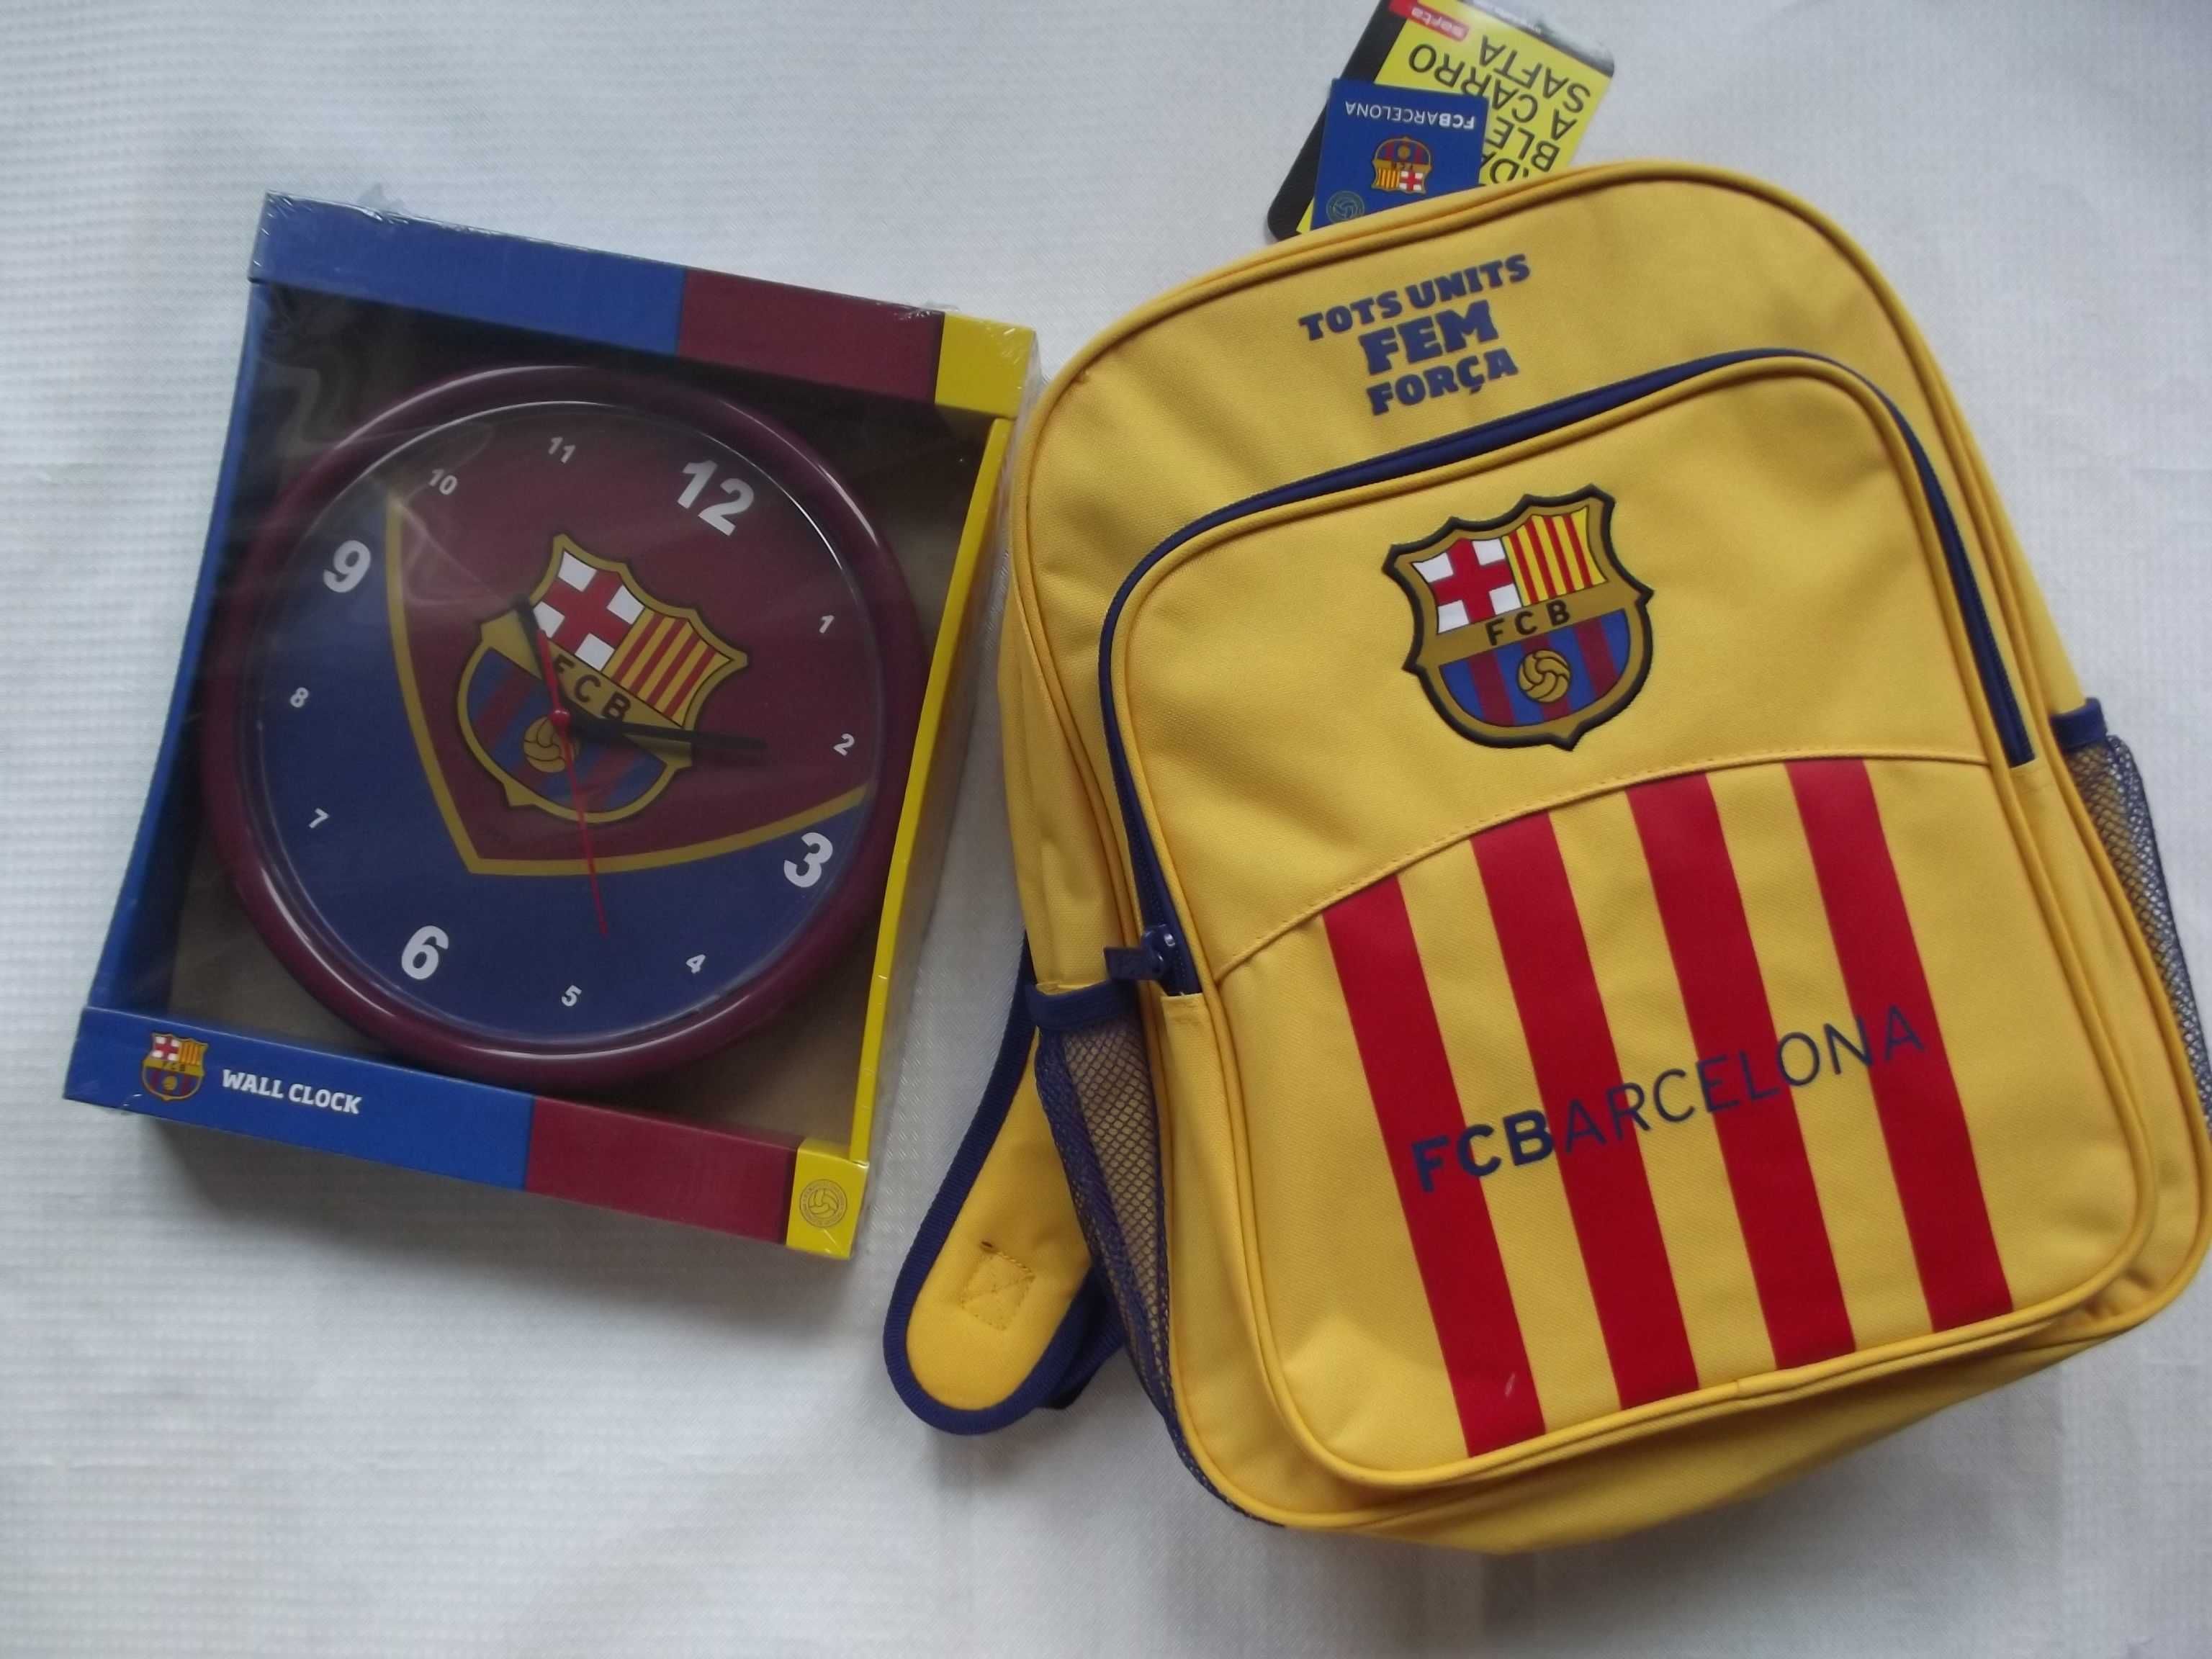 Plecak FC Barcelona zegar ścienny zestaw